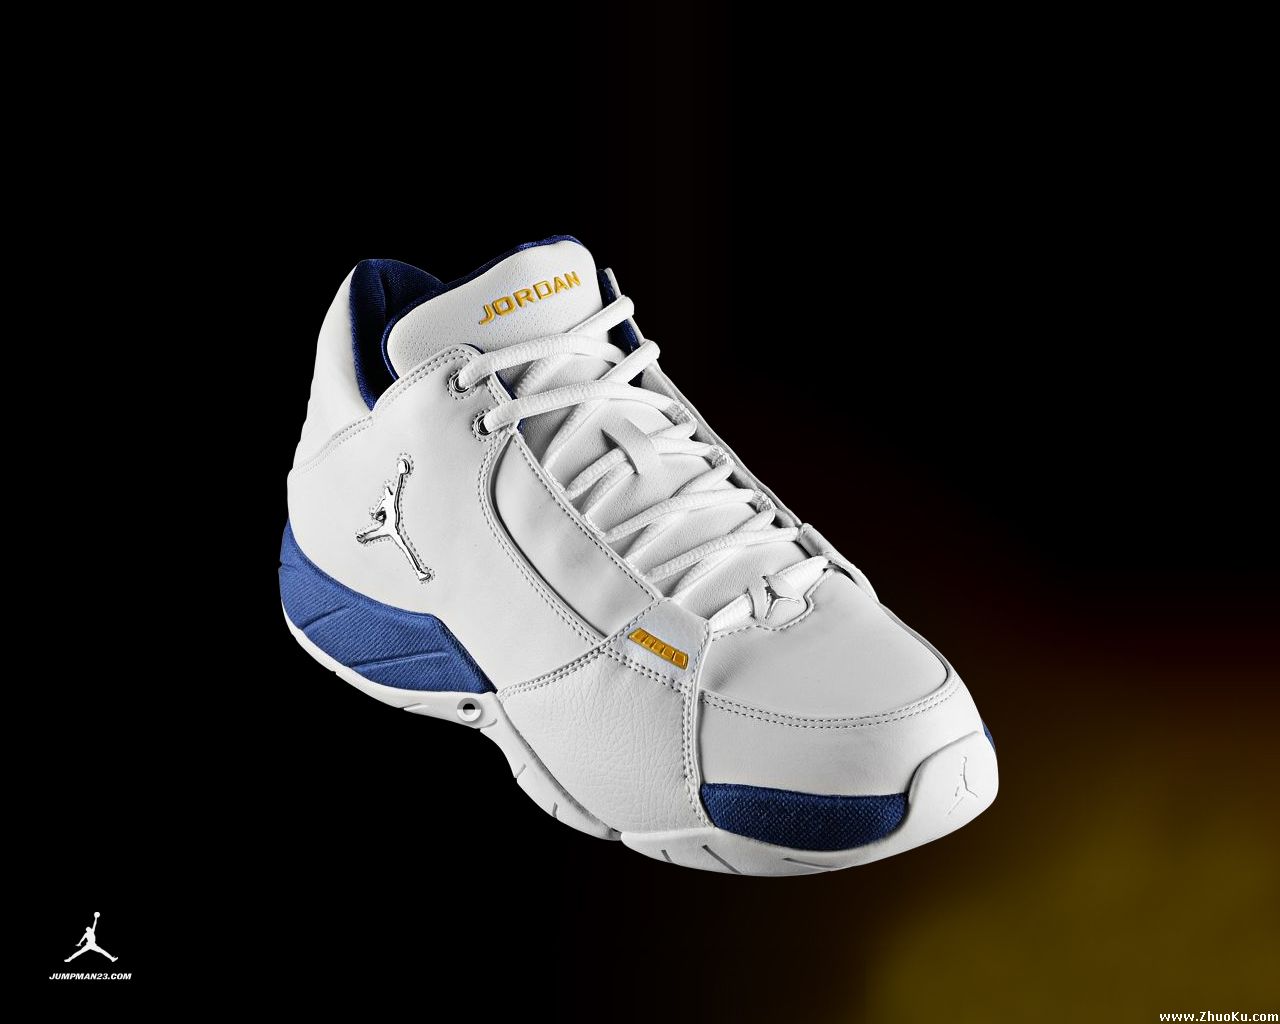 Wallpaperbase Sports Jordan Shoes Mac Picture538 Html